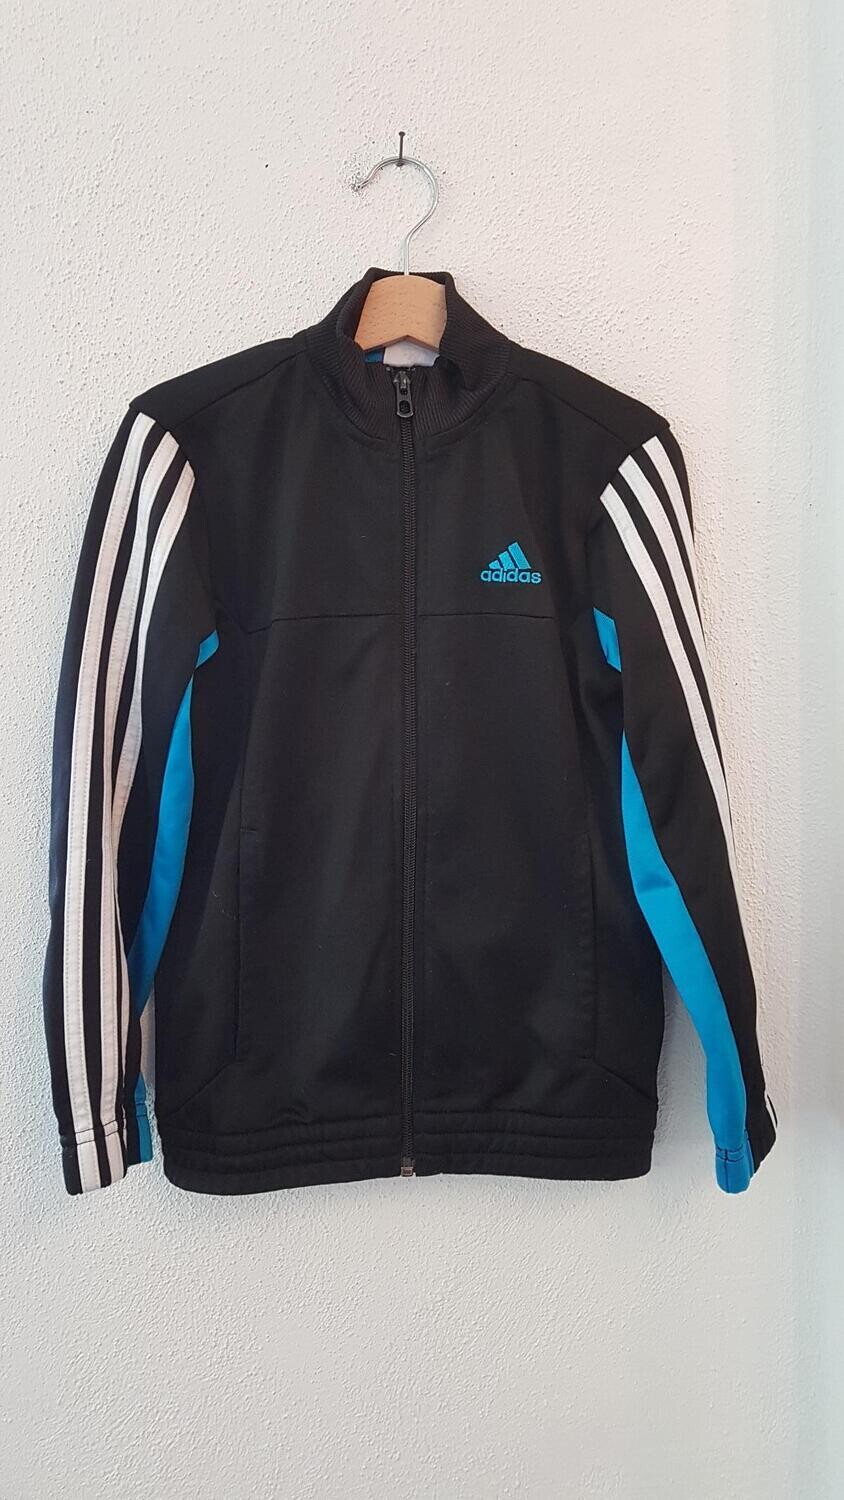 Sport-Jacke "Adidas" Gr. 128